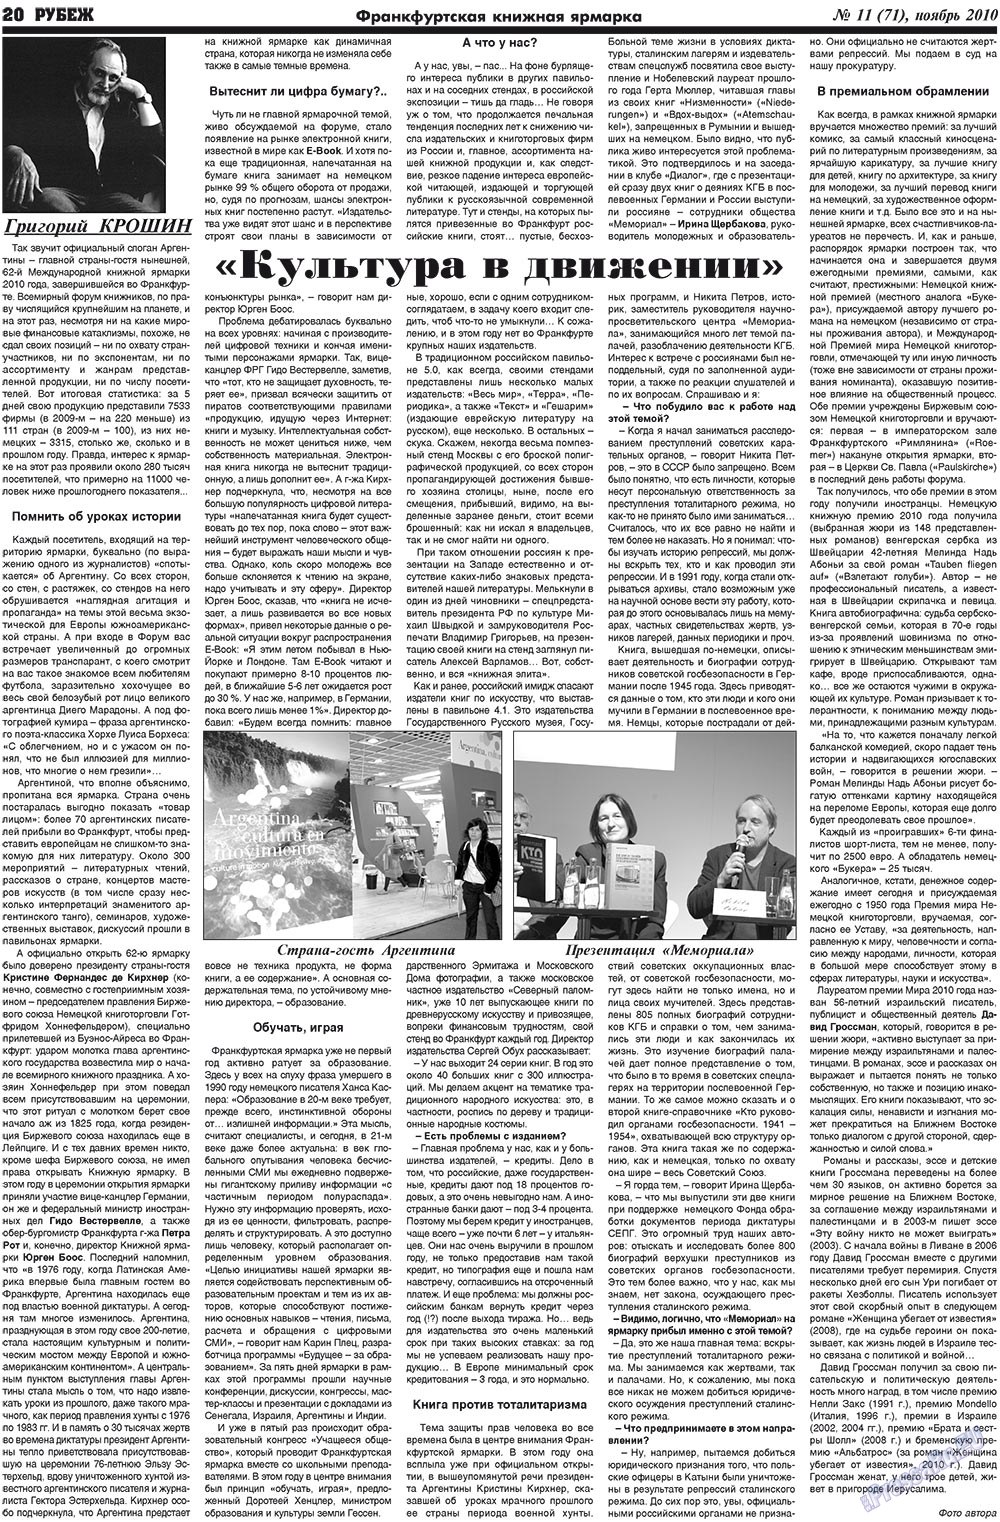 Рубеж (газета). 2010 год, номер 11, стр. 20